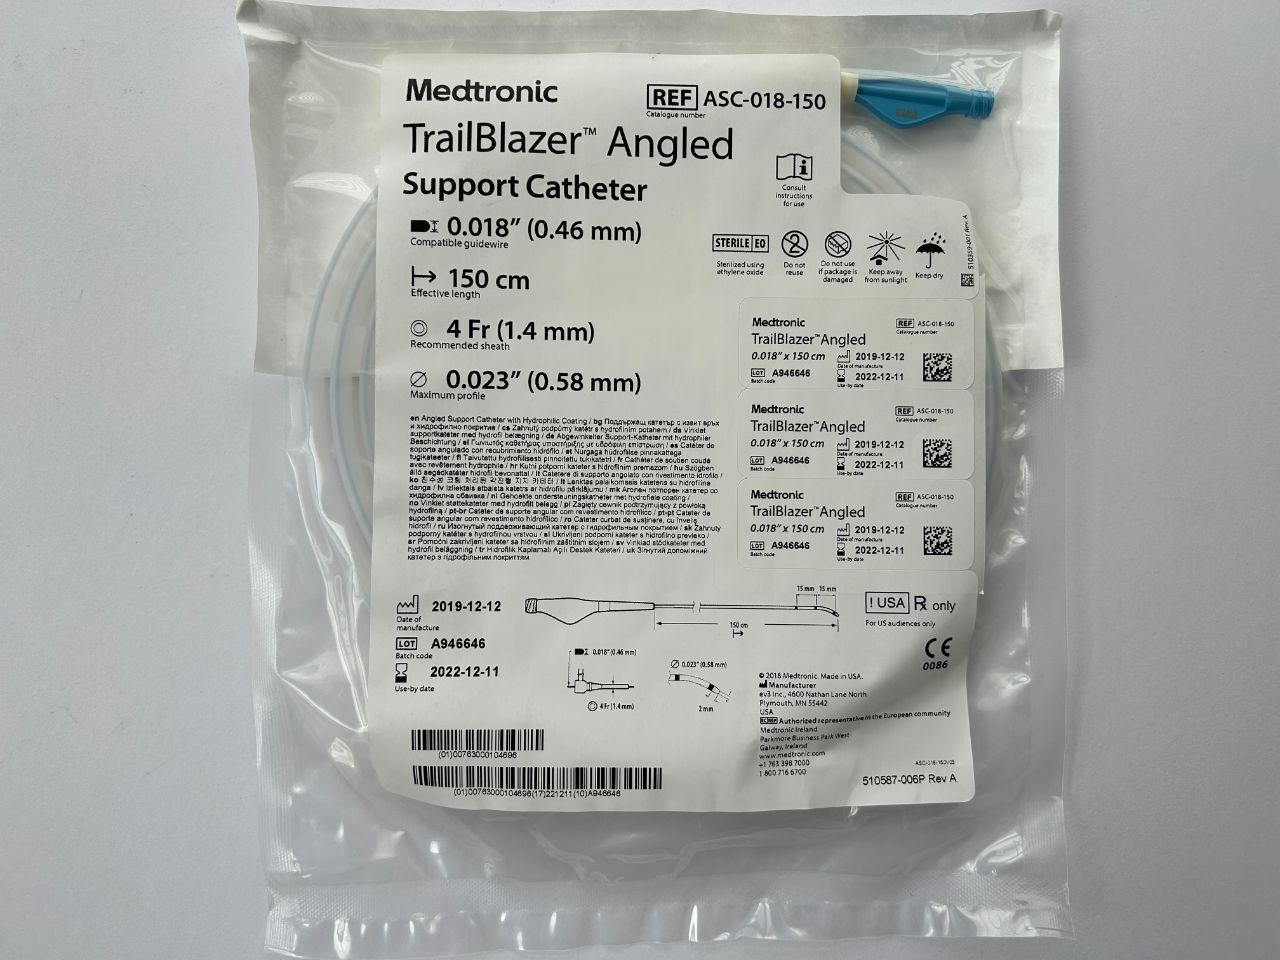 Medtronic TrailBlazer Angled Support Catheter 0.018 (0.46 mm) 150 cm 4 Fr REF: ASC-018-150 DATE: 2022-12-11